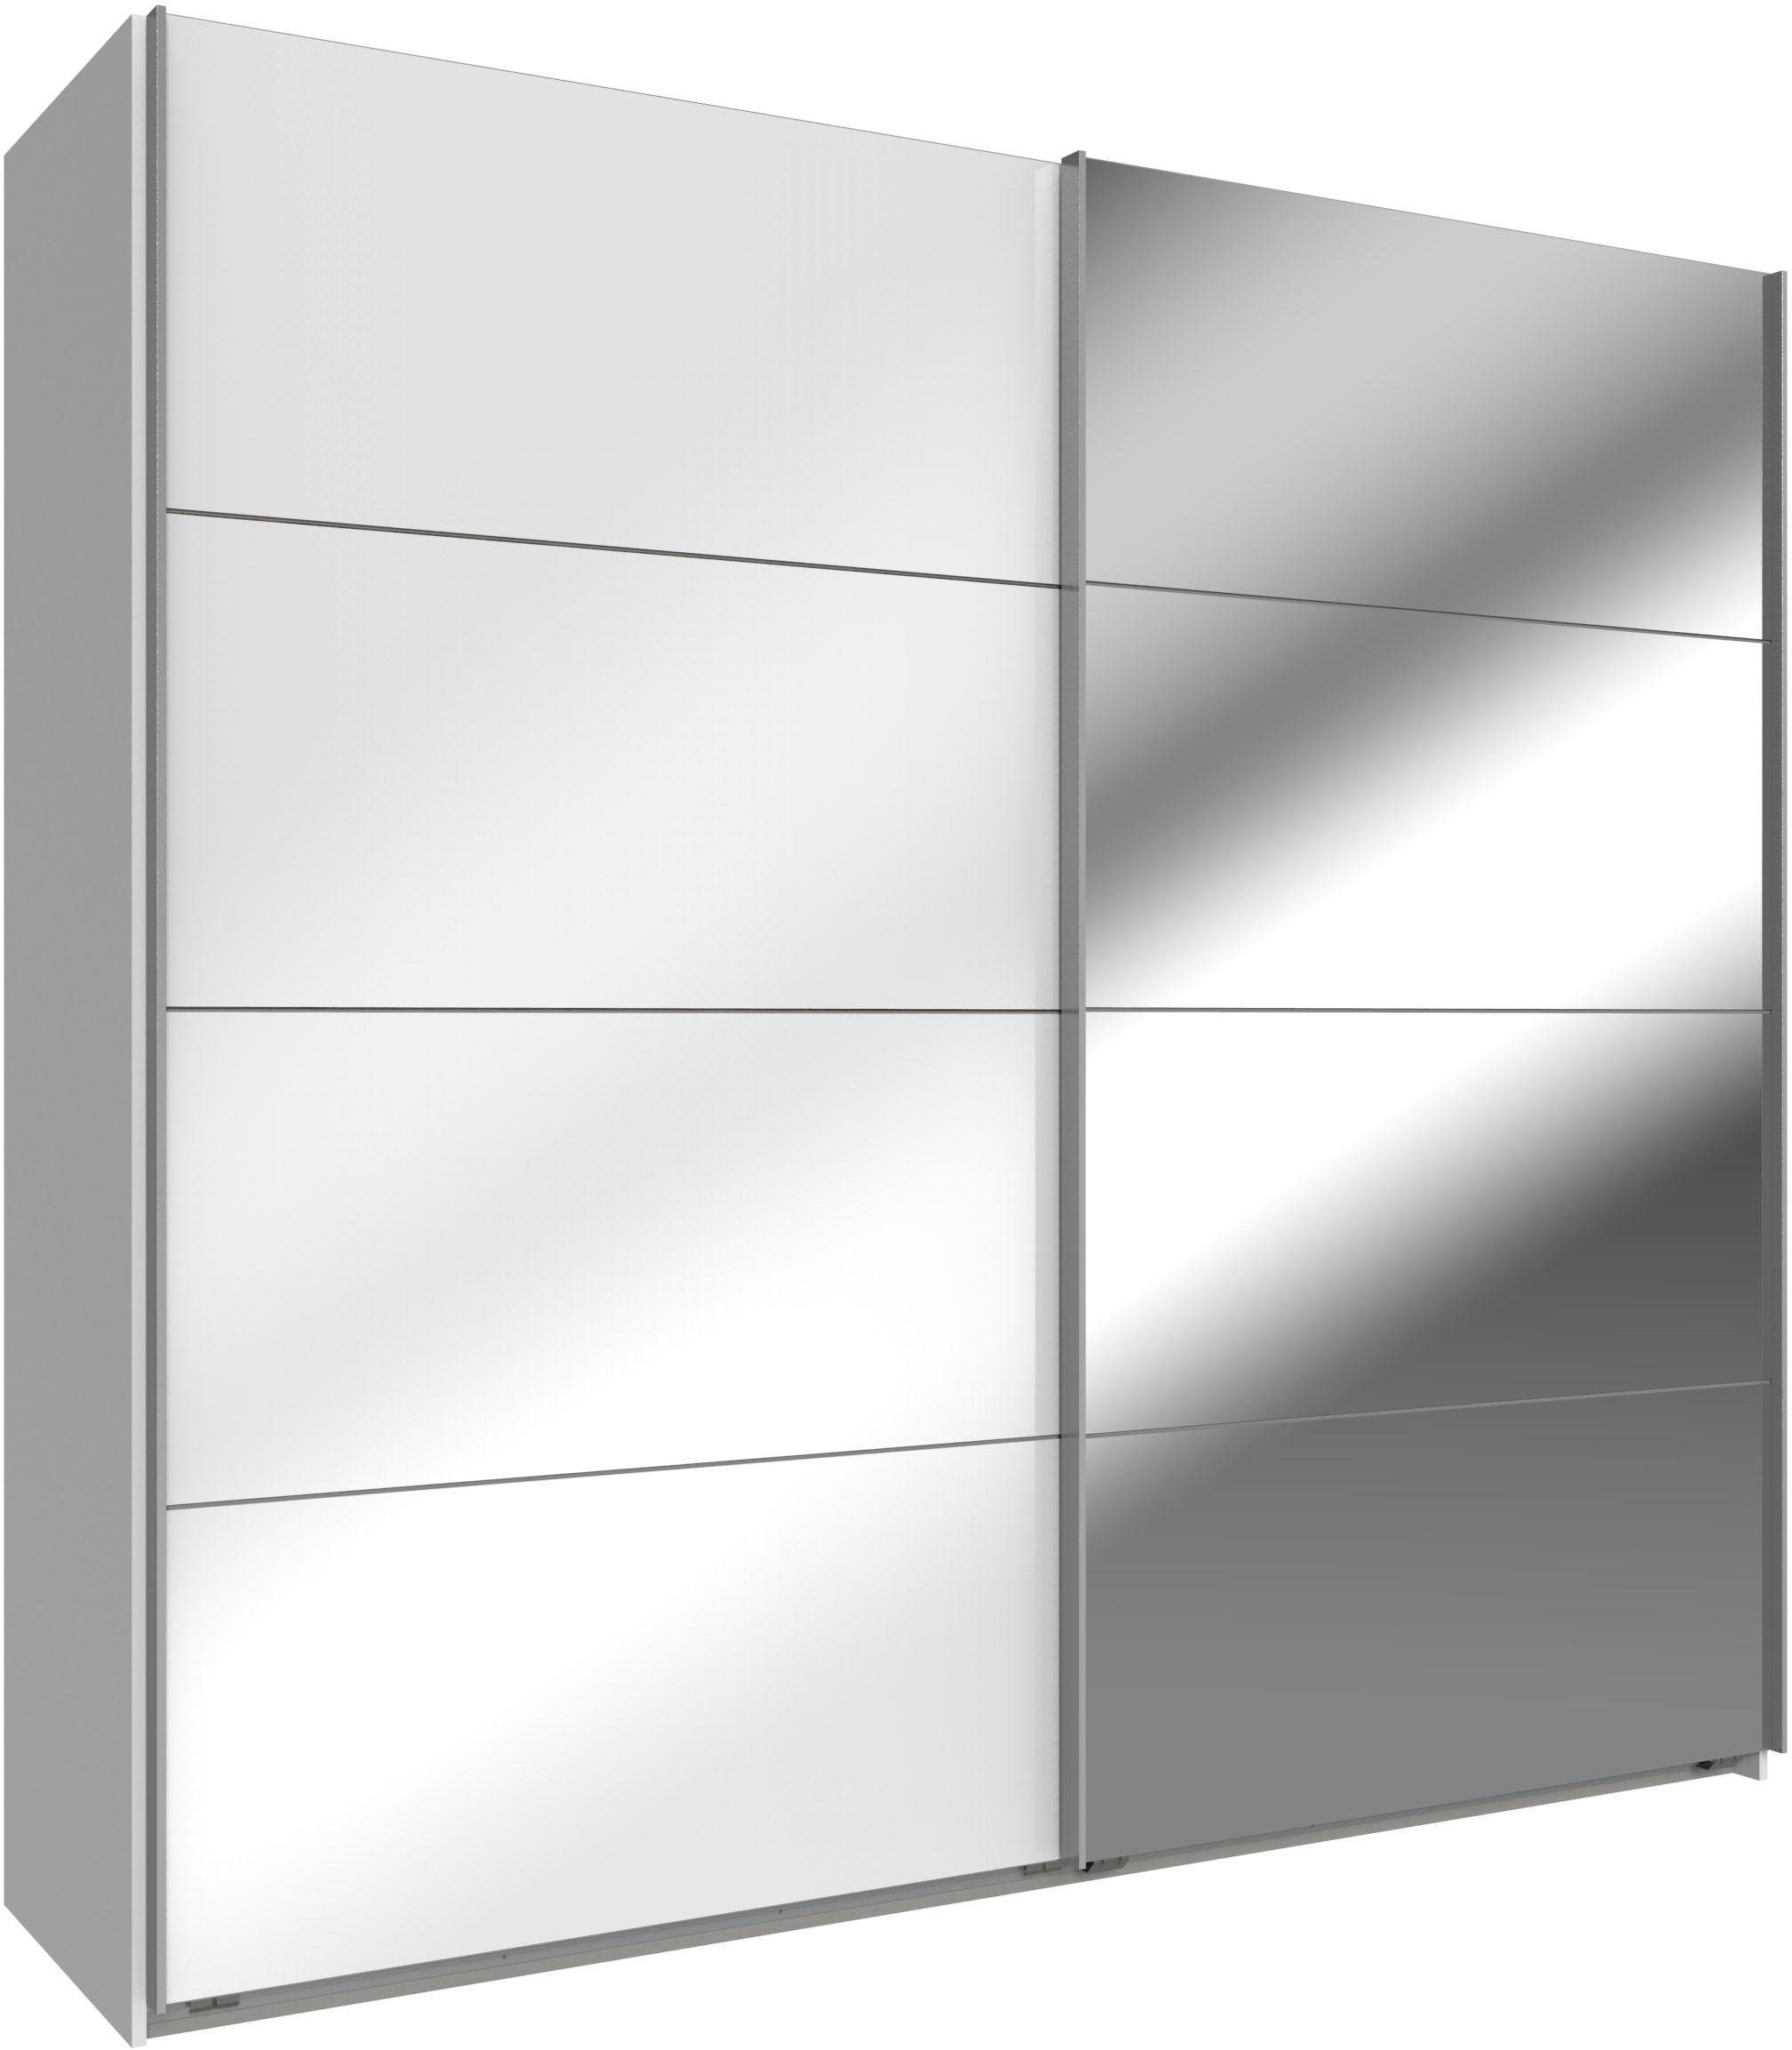 Wimex Schwebetürenschrank Easy mit Glas und Spiegel weiß, Weißglas/Spiegel